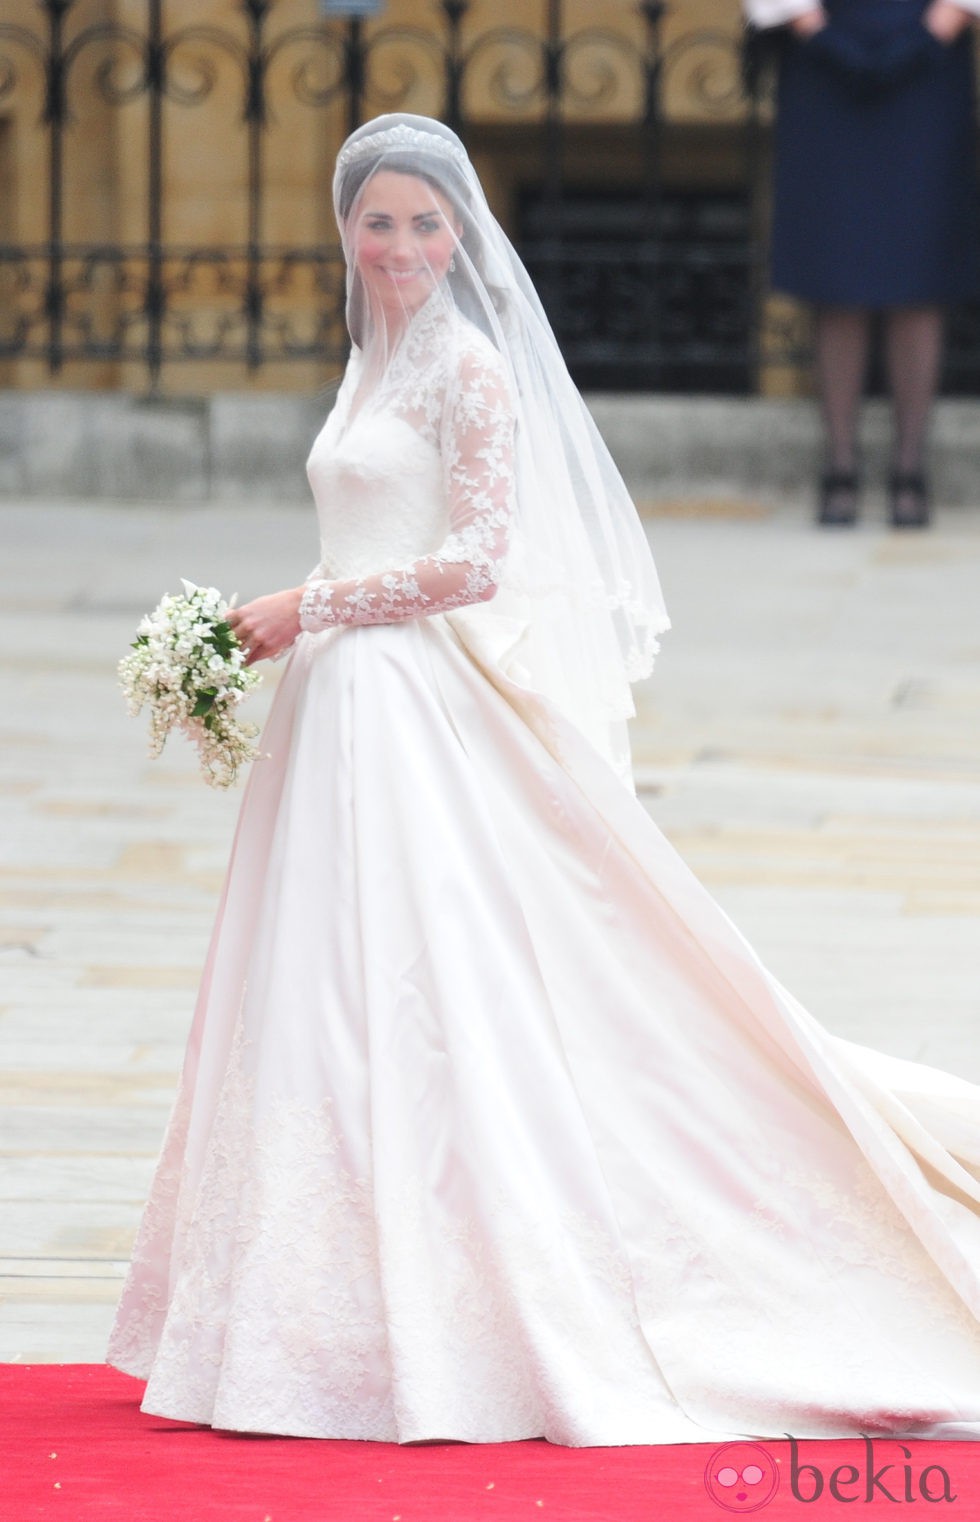 La Duquesa Catalina de Cambridge el día de su boda